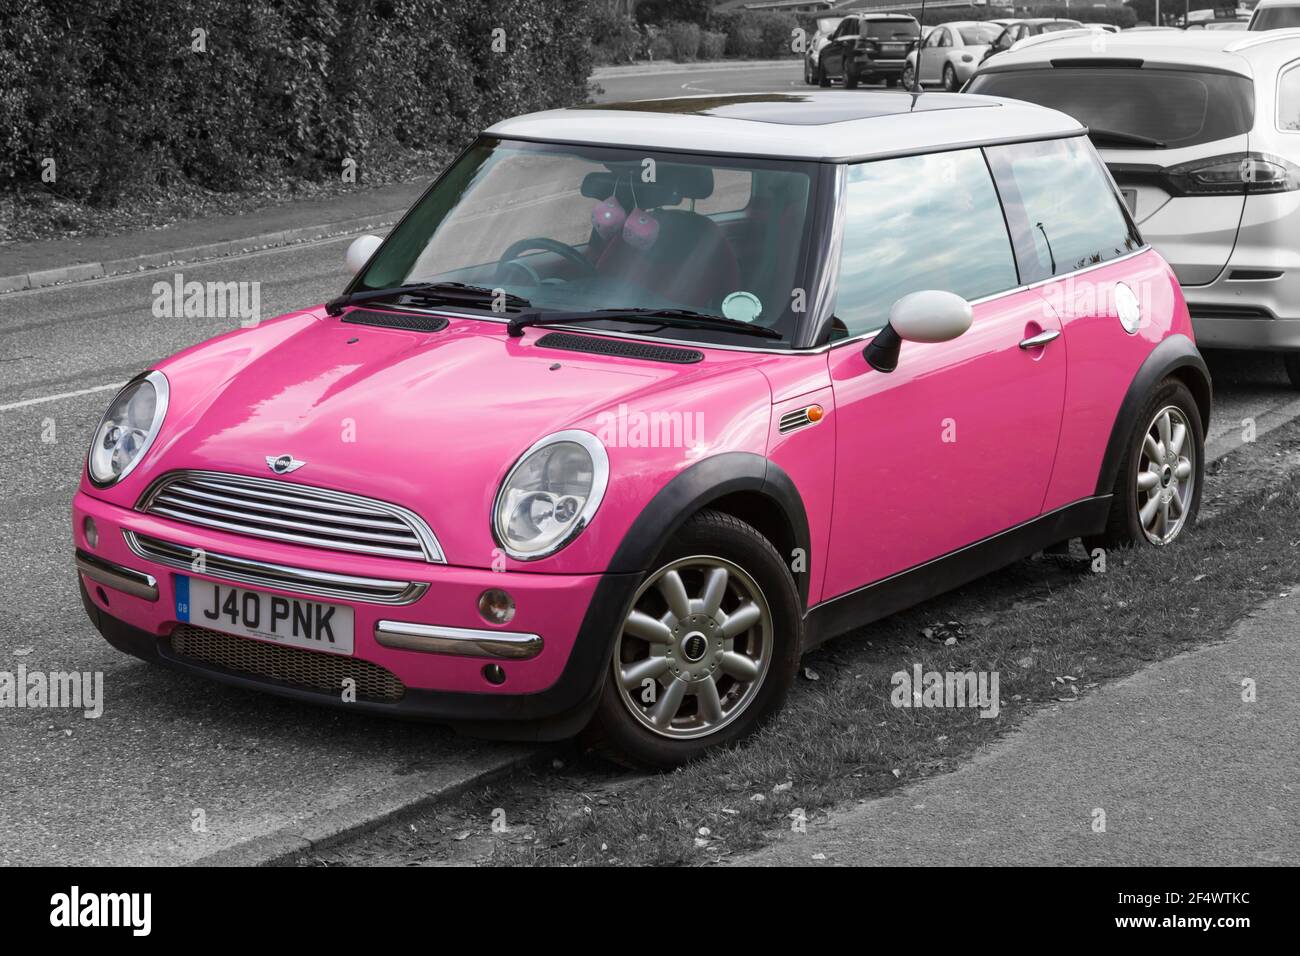 Pink mini car immagini e fotografie stock ad alta risoluzione - Alamy